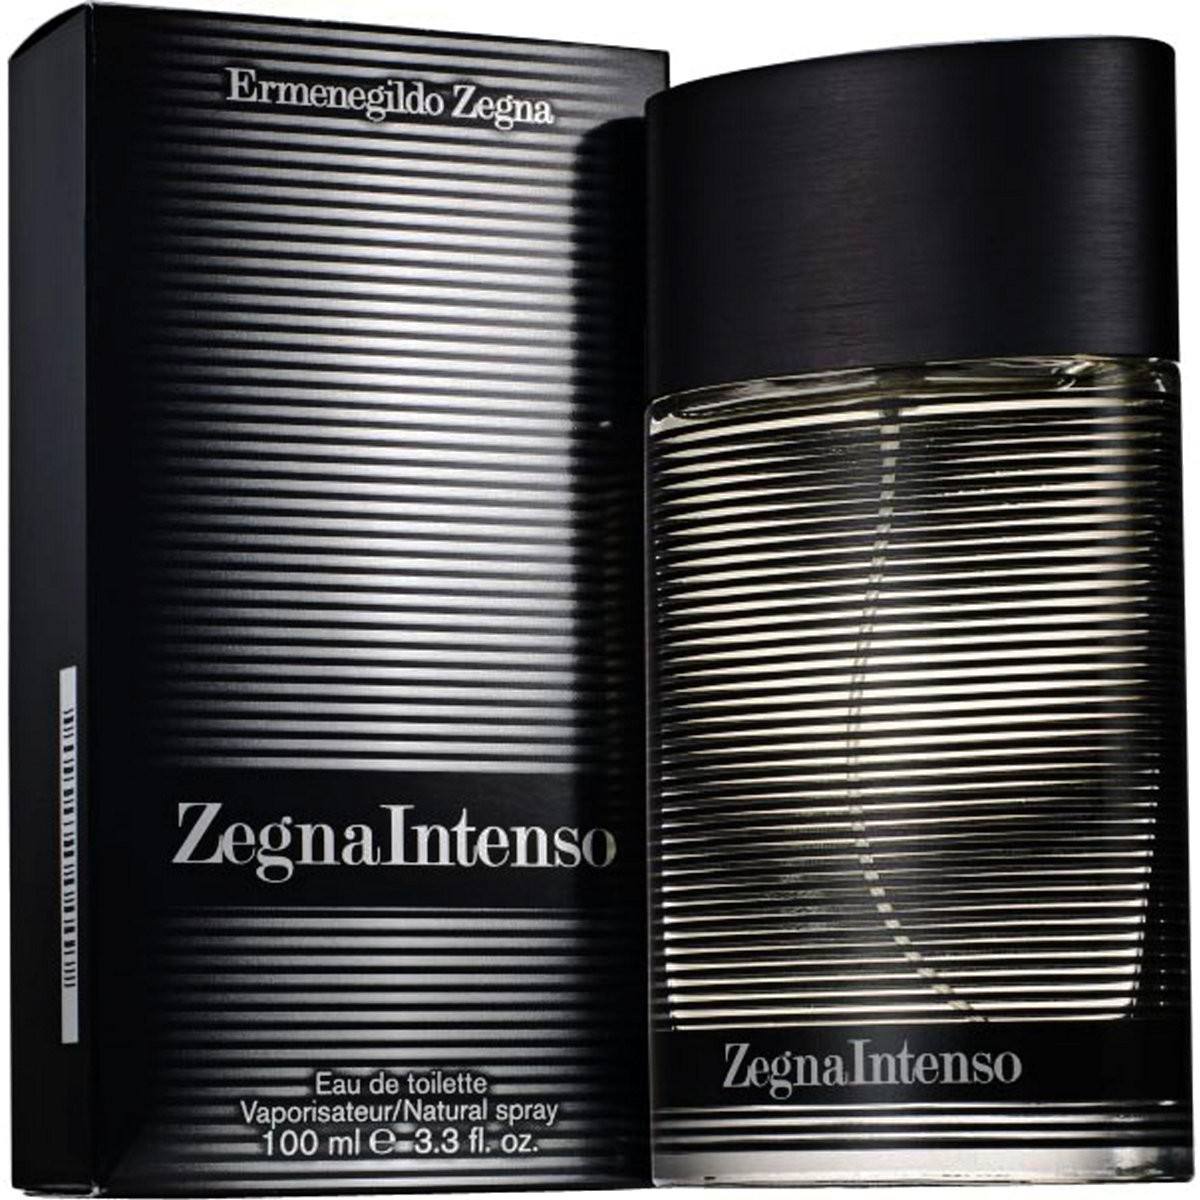 Perfume Ermenegildo Zegna Intenso 100ml Original Lacrado!!!! - R$ 339